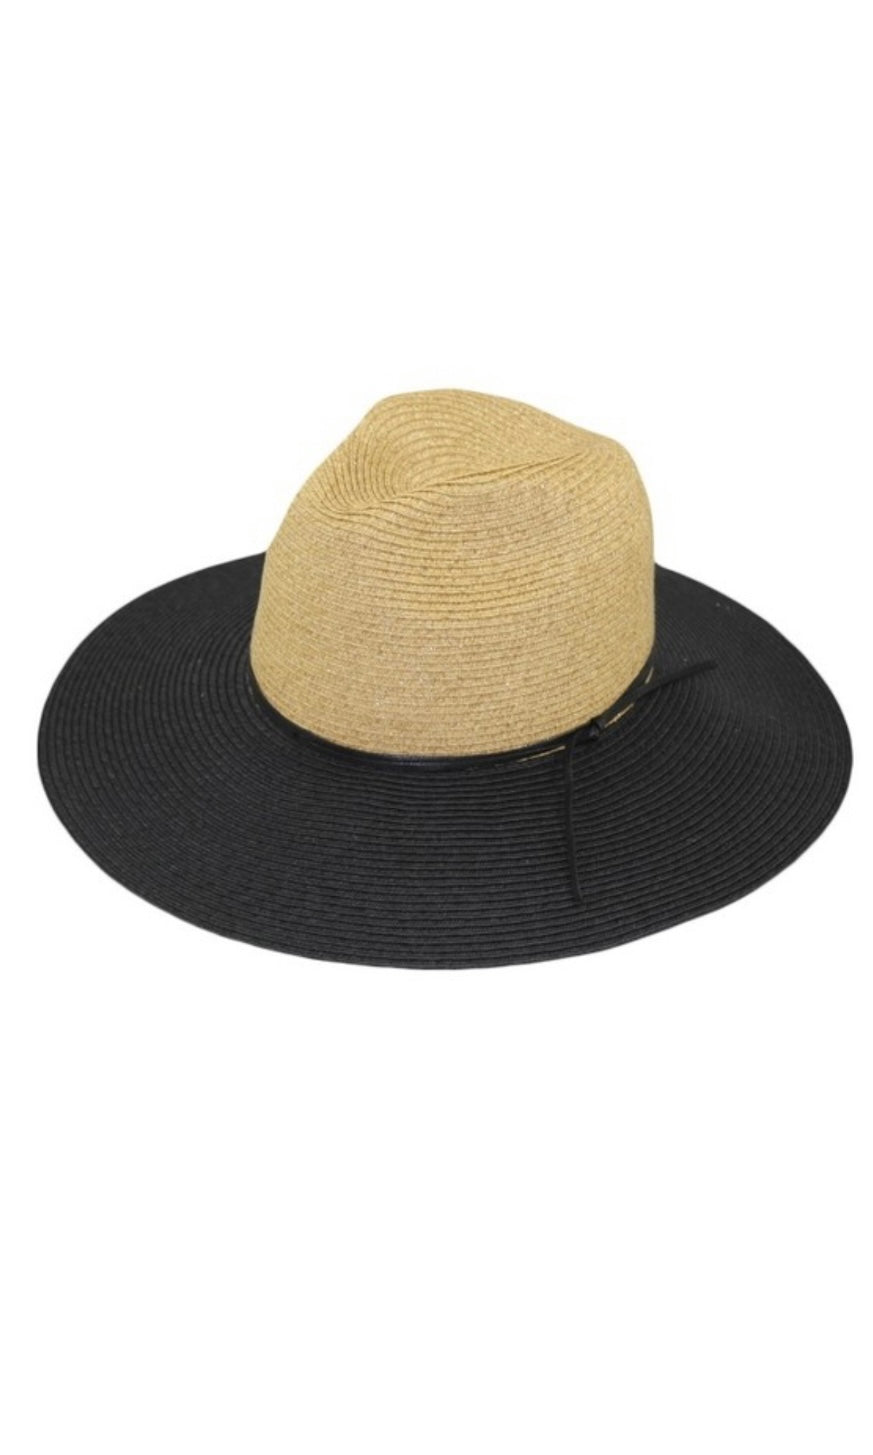 Banjo Natural & Black Large Brim Panama Sun Hat